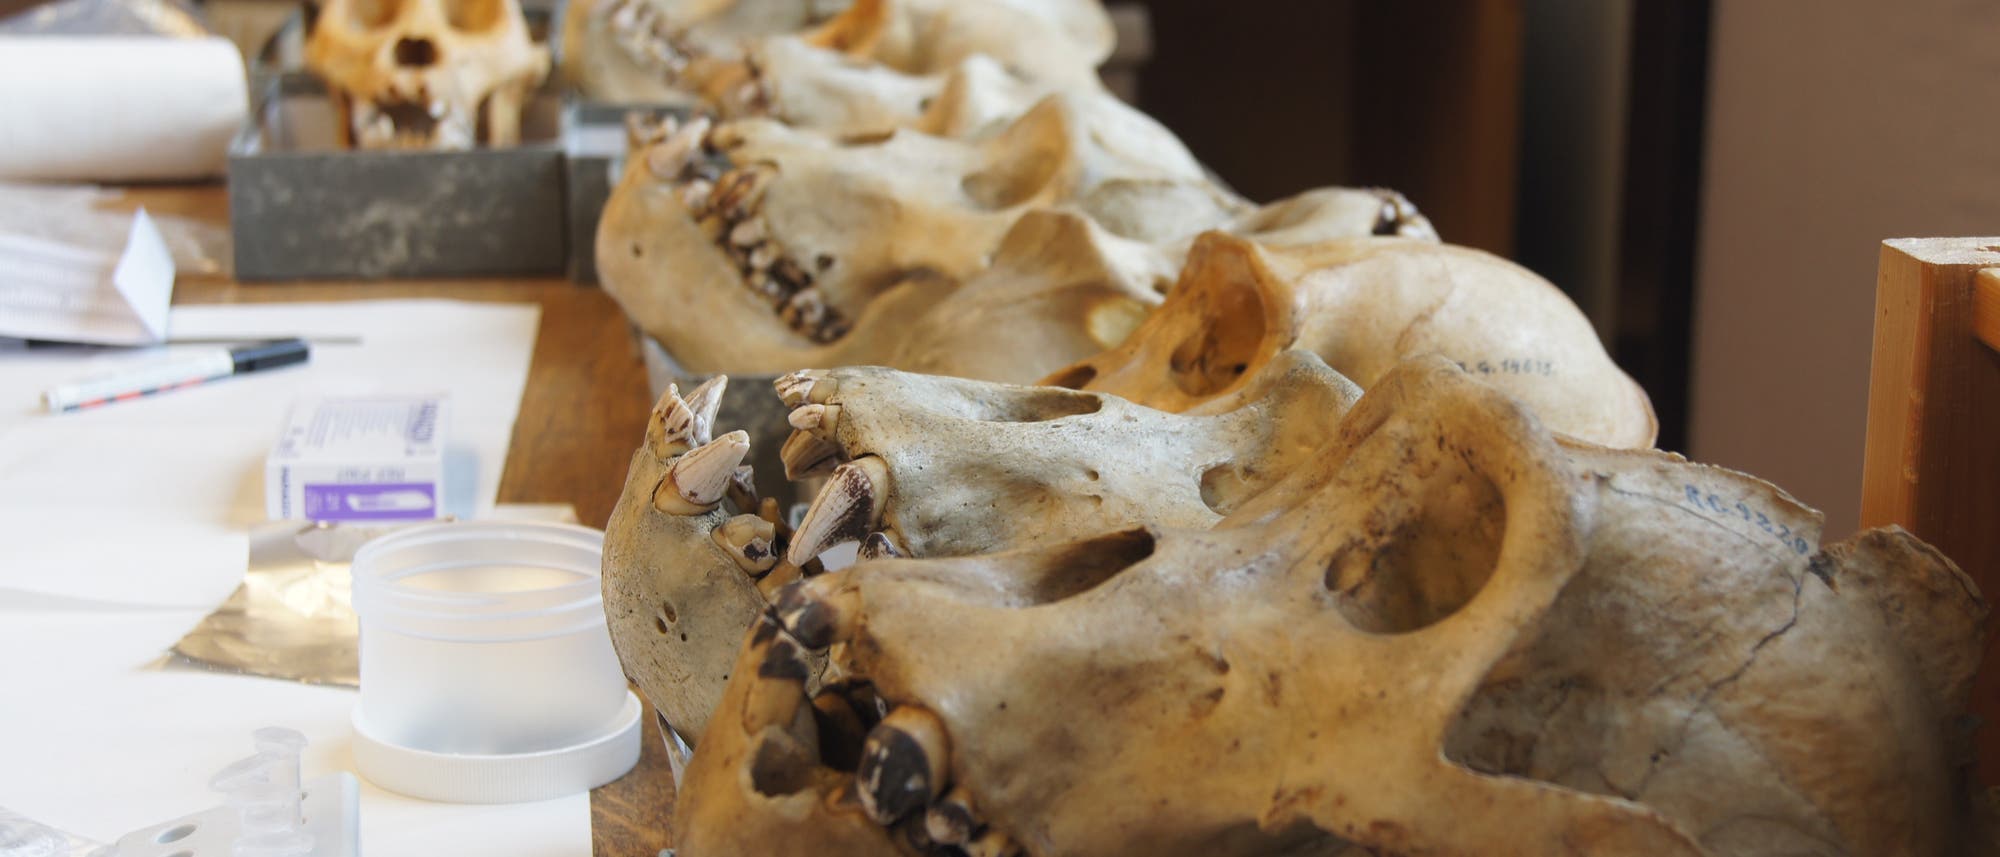 An den Zähnen von Gorillas sind typische Spuren bakterieller Besiedlung zu erkennen